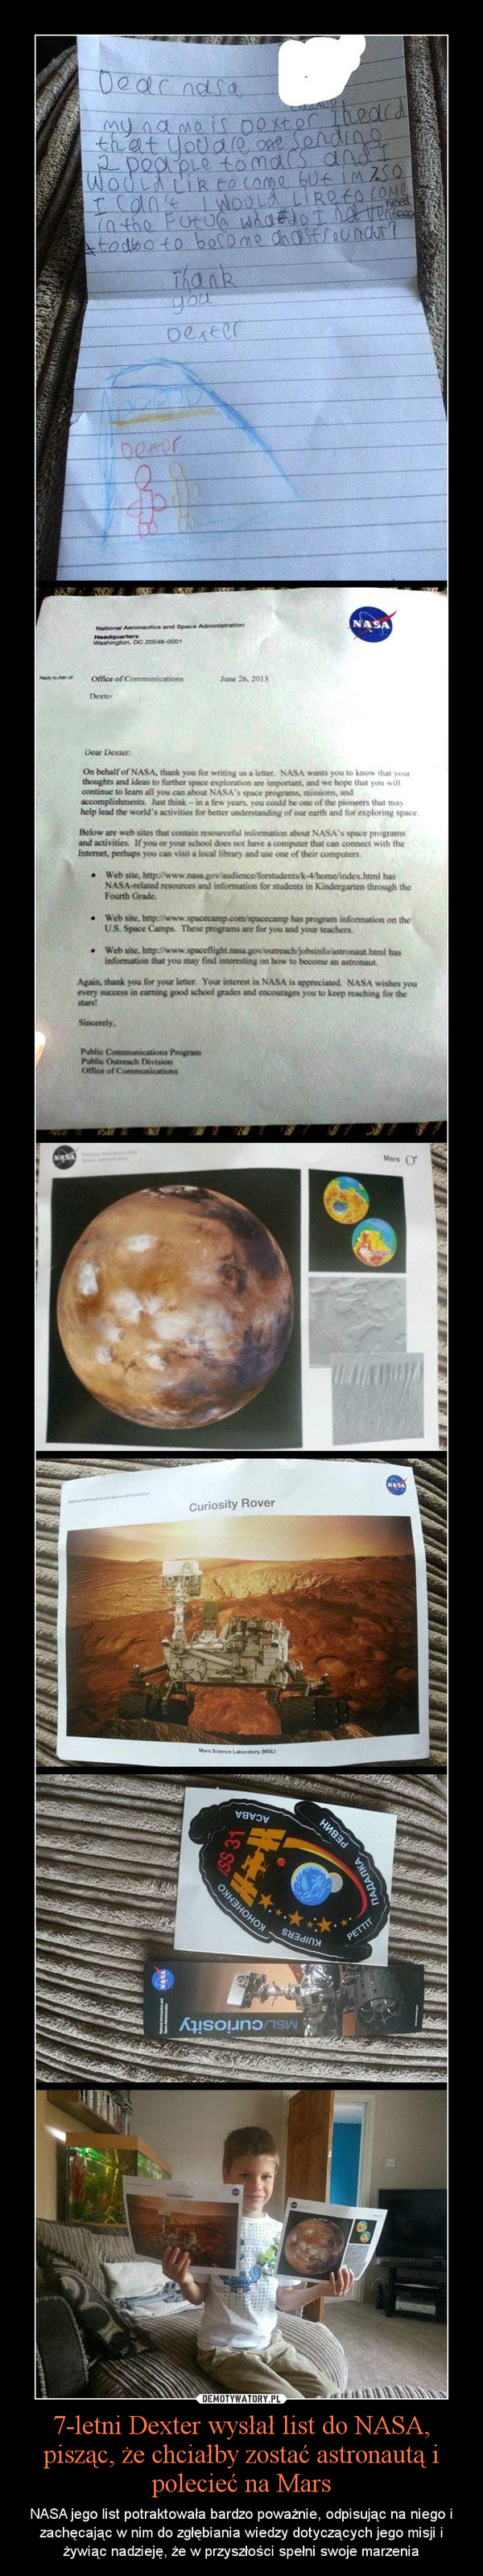 7-letni Dexter wysłał list do NASA, pisząc, że chciałby zostać astronautą i polecieć na Mars